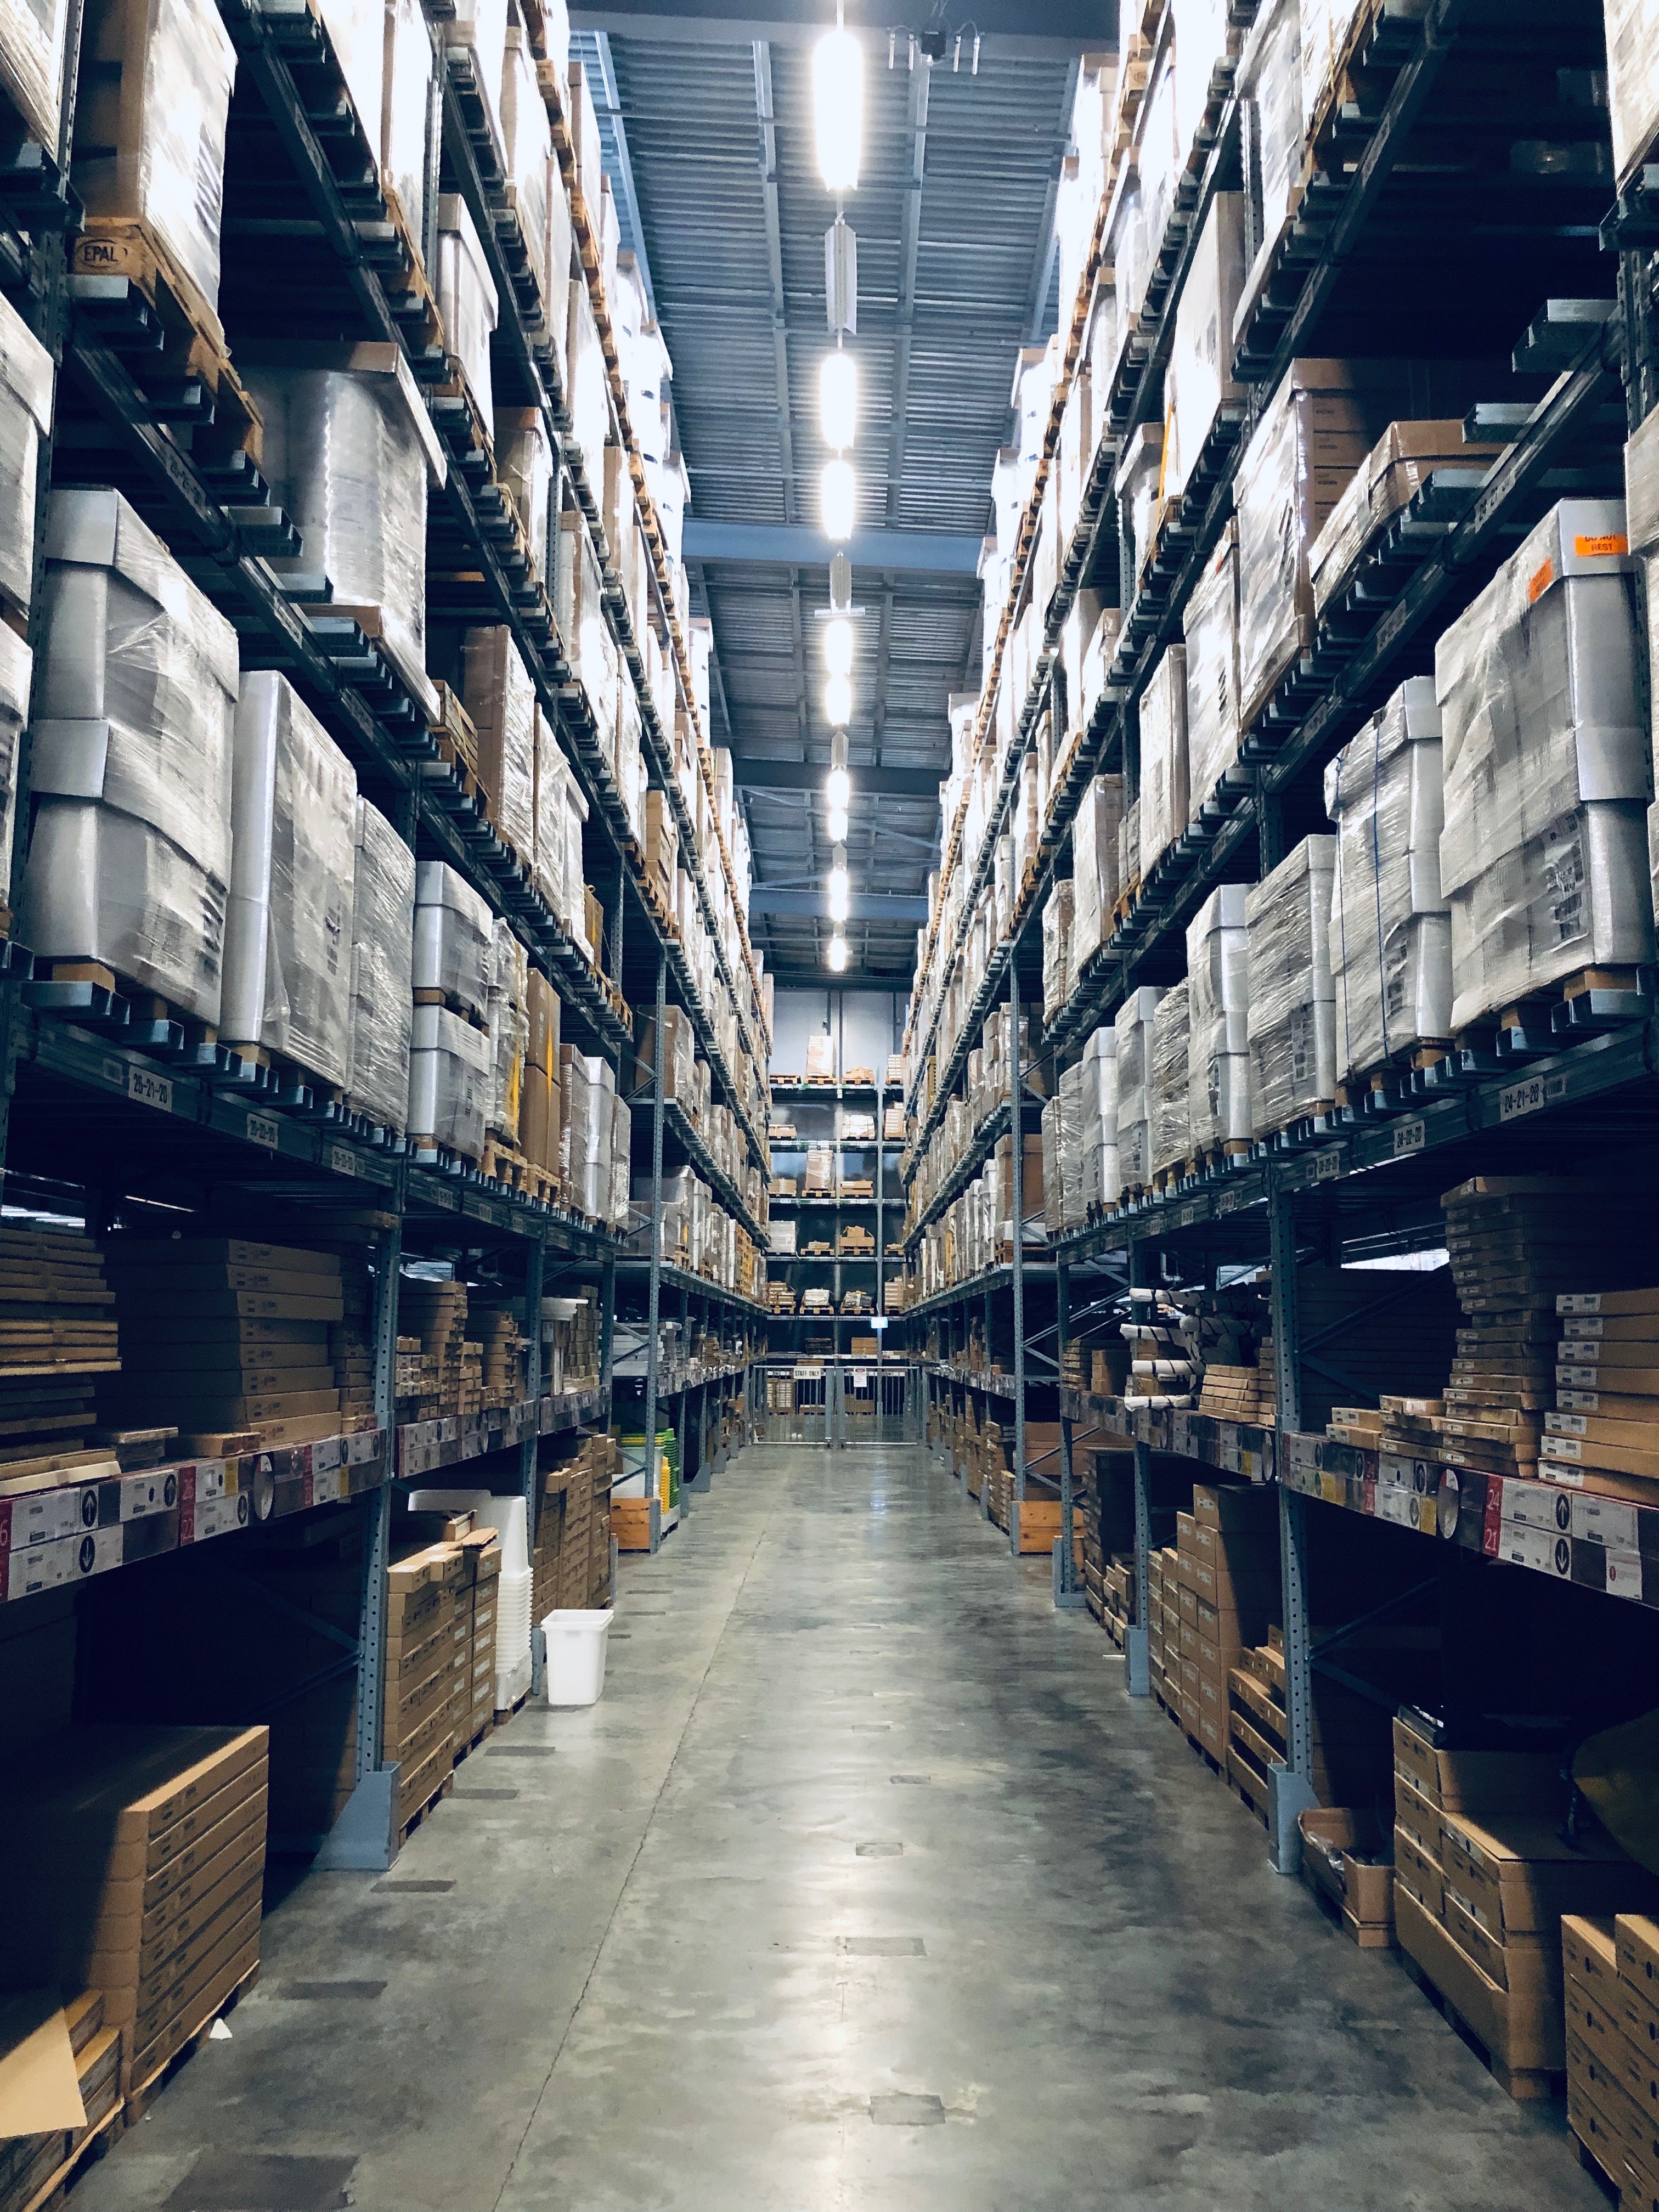 Stocked pallet racking shelves in warehouse